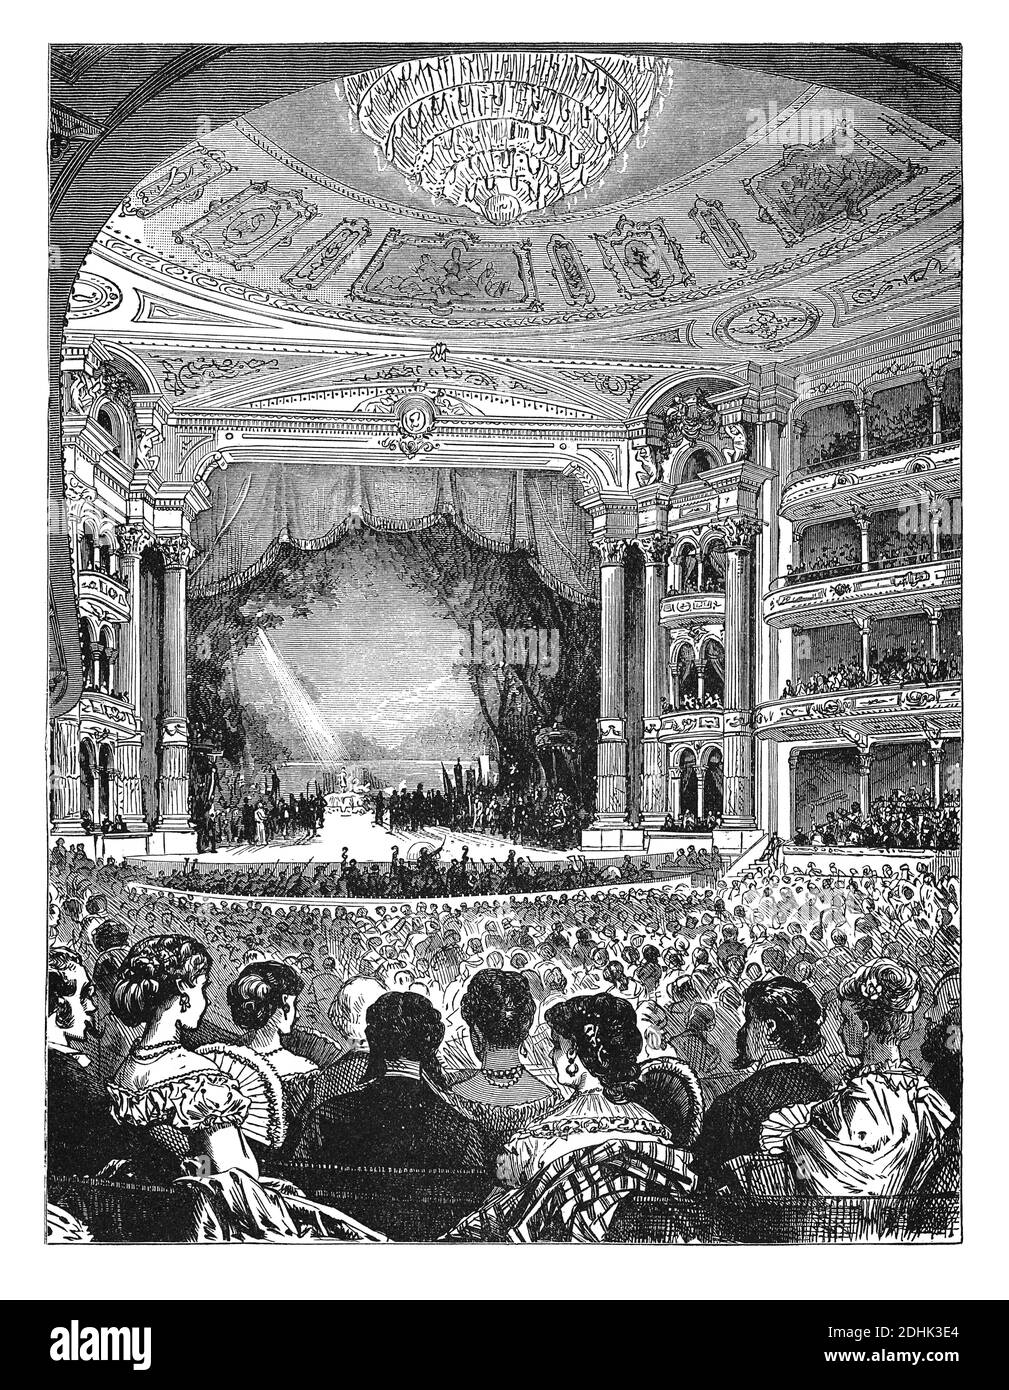 19. Jahrhundert Illustration der Etikette der Oper. Interieur der Academy of Music, Philadelphia, während einer Opernaufführung. Veröffentlicht in 'der Stockfoto